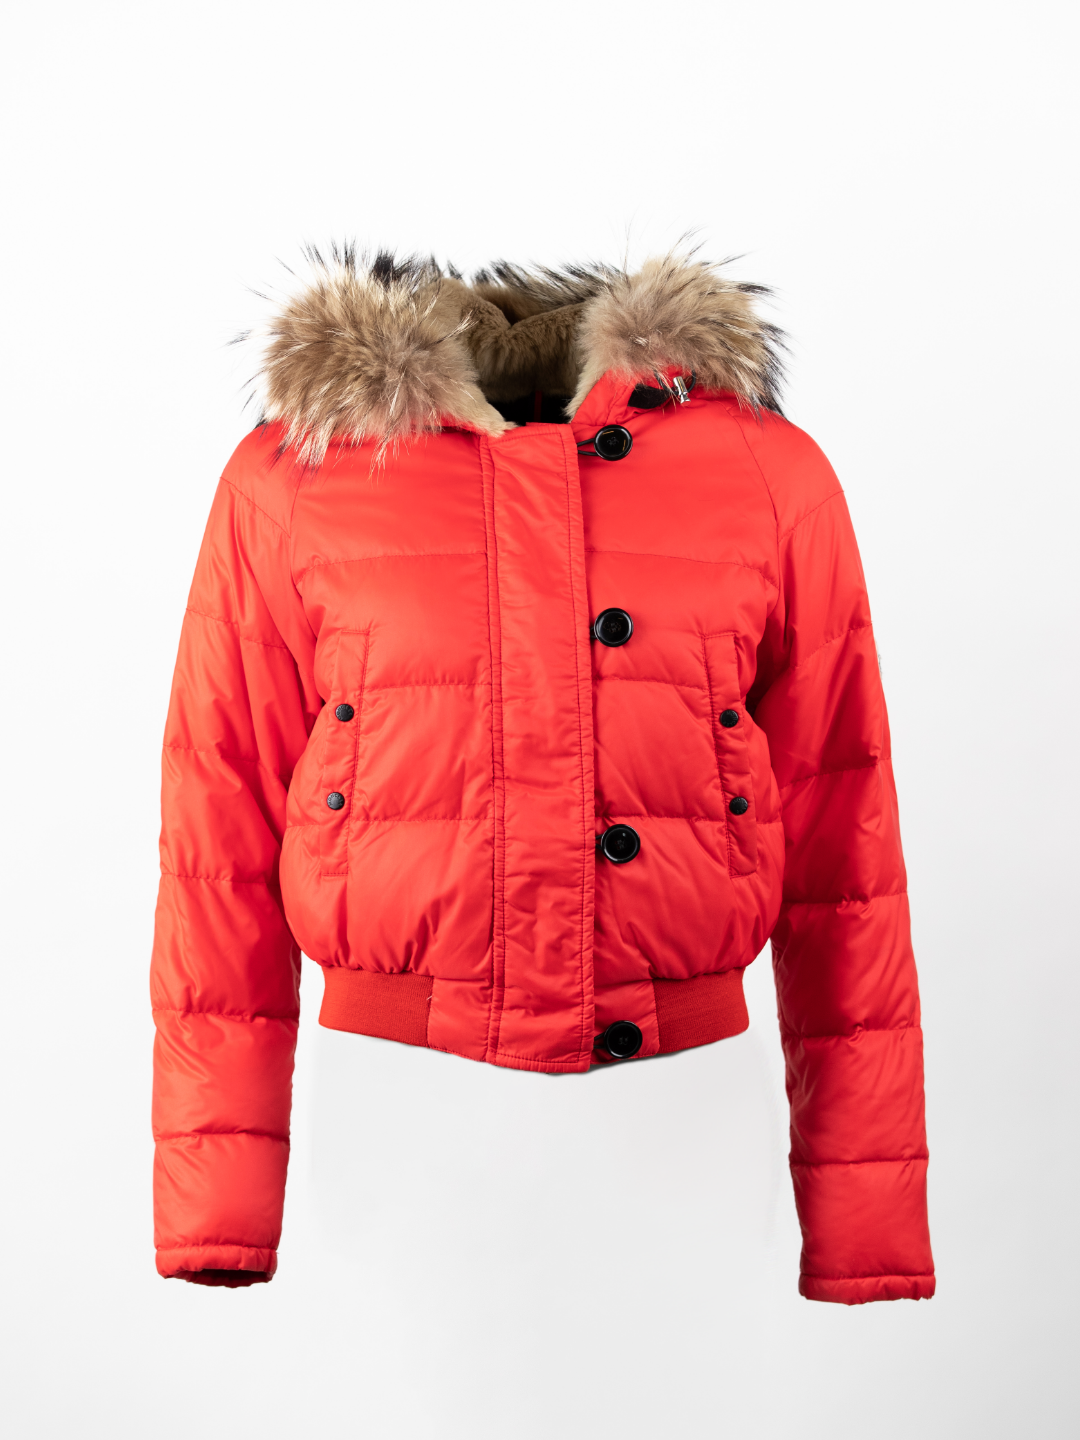 Bulgarie Coral Red Fur Jacket